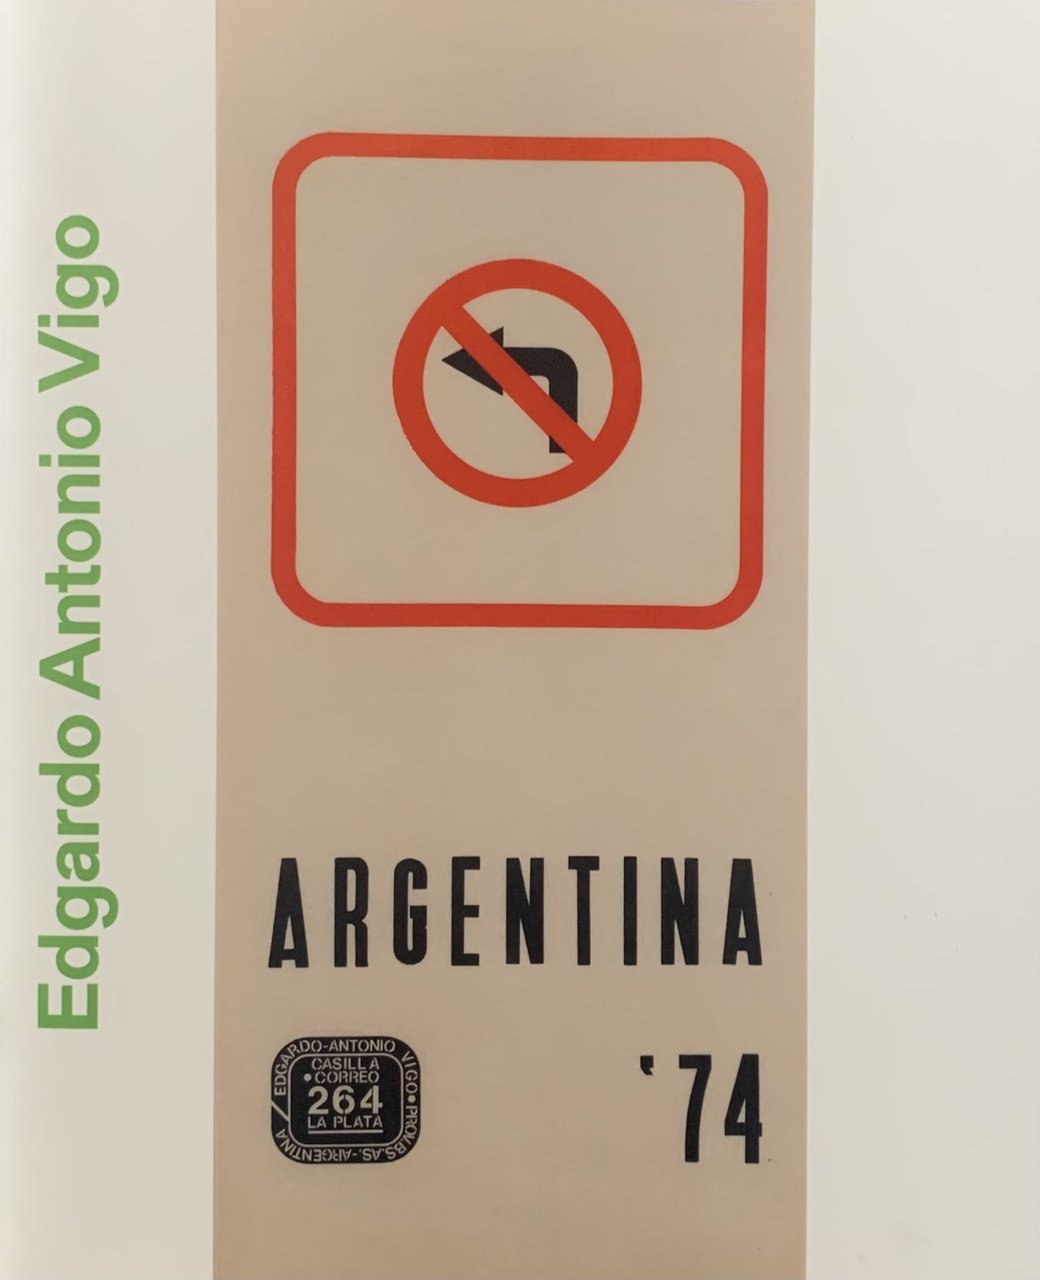 Edgardo Antonio Vigo: A Collection. Argentina '74